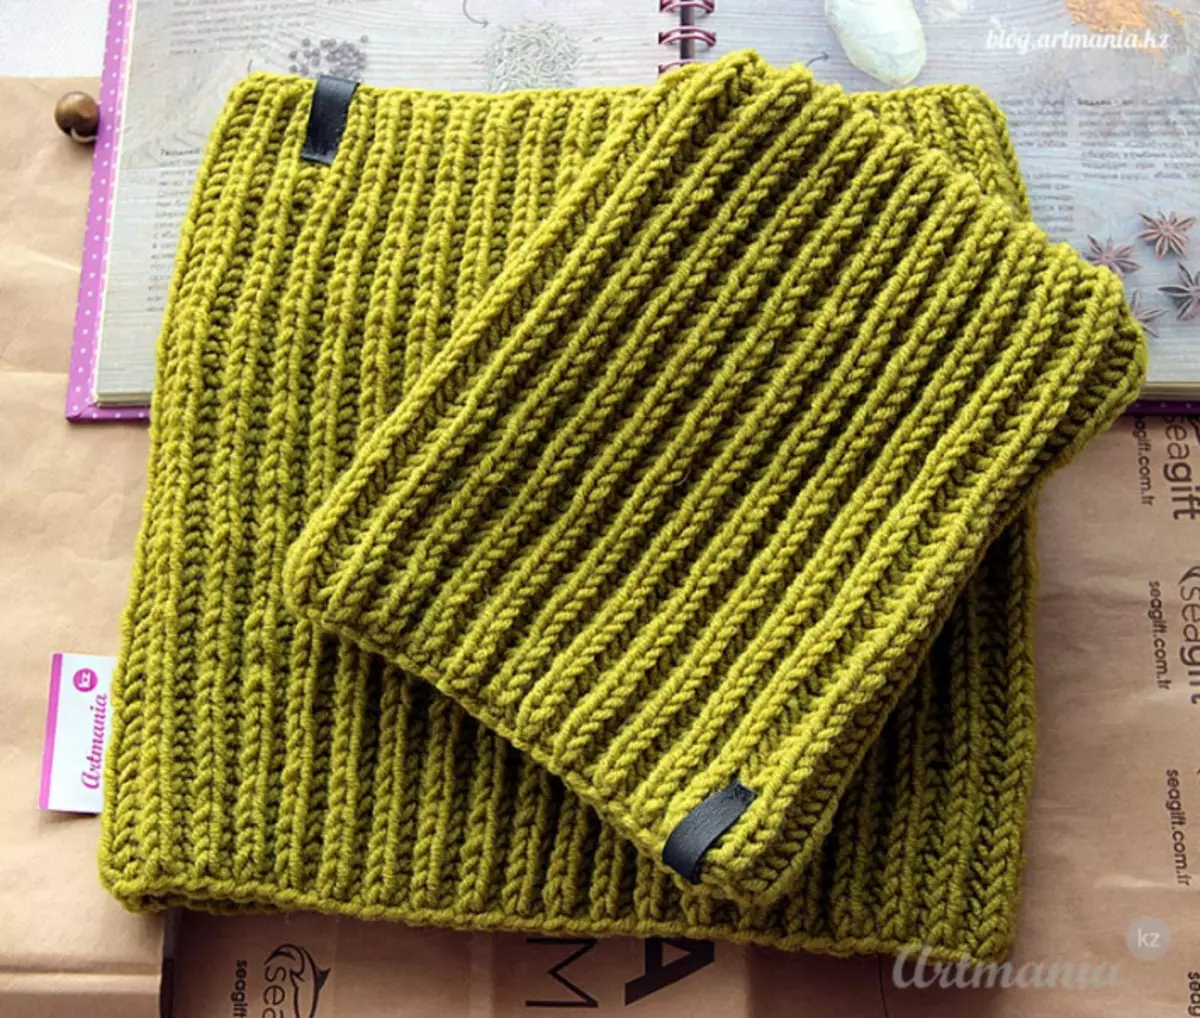 Snoo Elastiċi Elastiċi Labar tan-knitting b'deskrizzjoni u skema